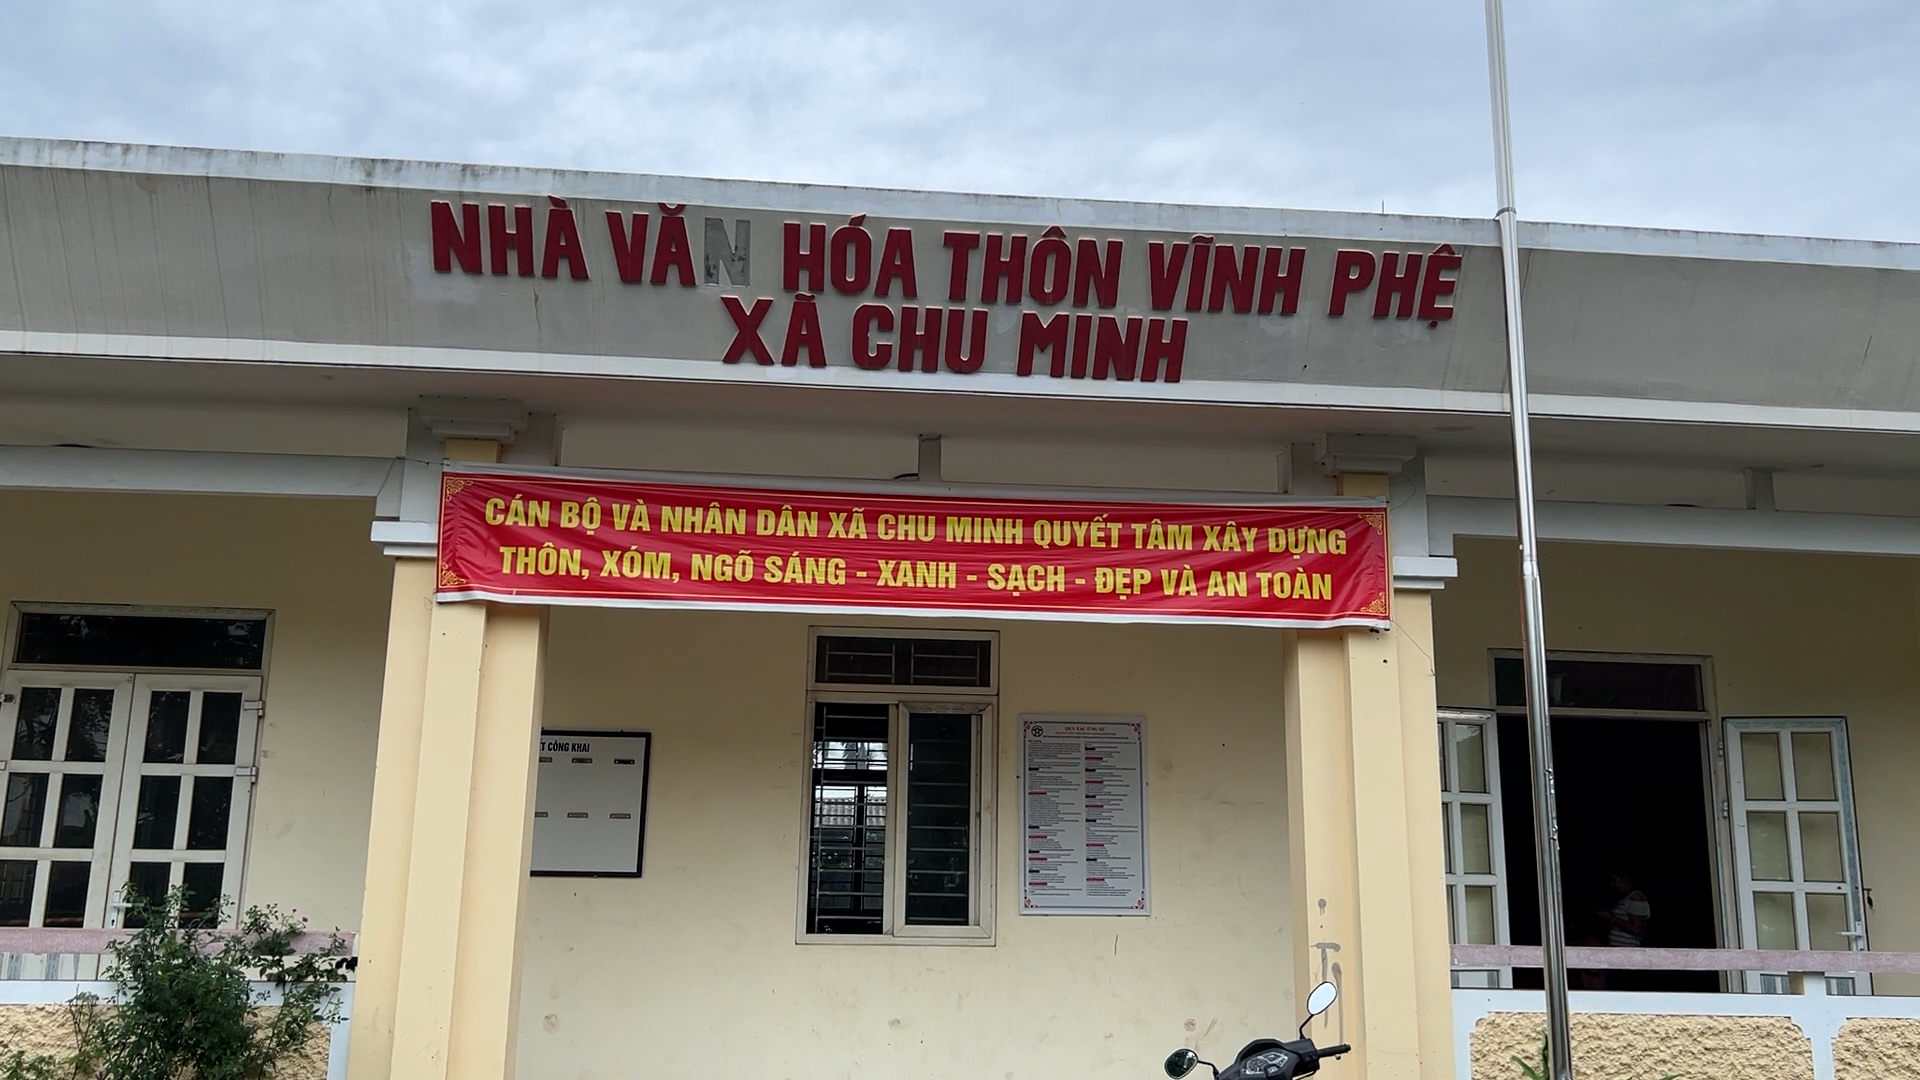 Nhà văn hóa thôn Vĩnh Phệ, xã Chu Minh được hoàn thiện năm 2018, một trong những công trình góp phần giúp xã Bình Định về đích nông thôn mới. Ảnh: Huy Bình.